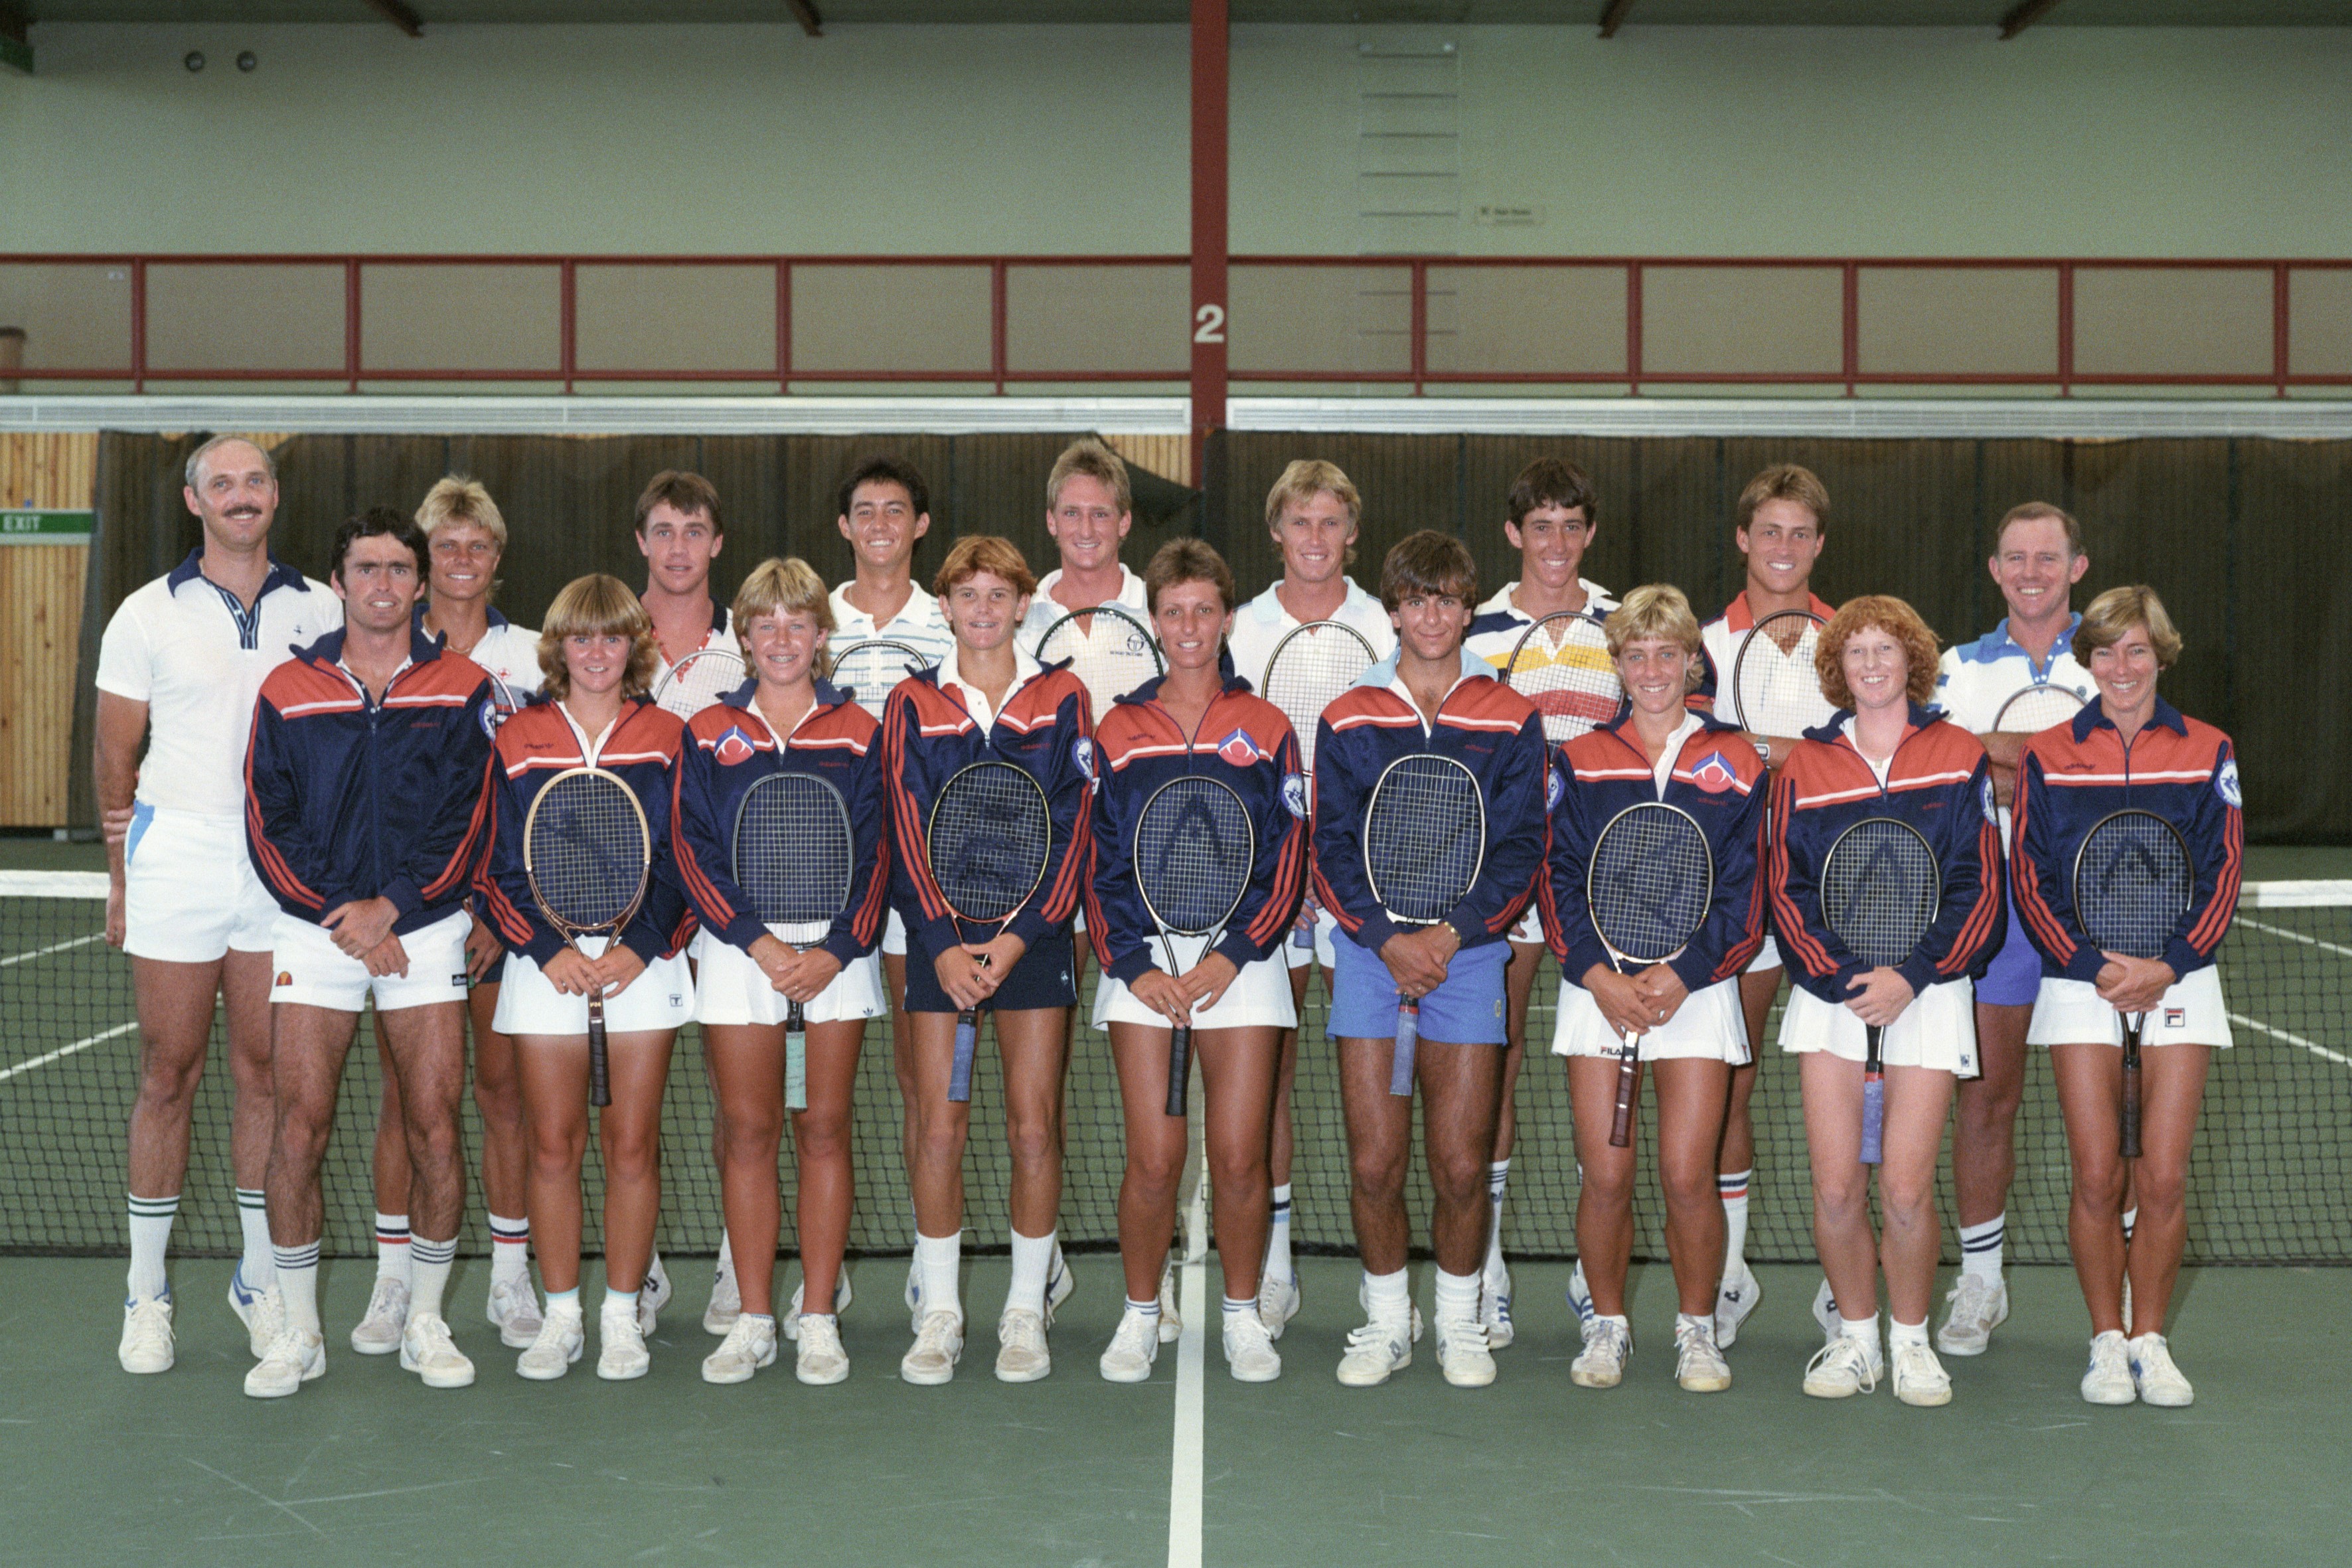 1984 AIS Tennis Squad posing for a team photo